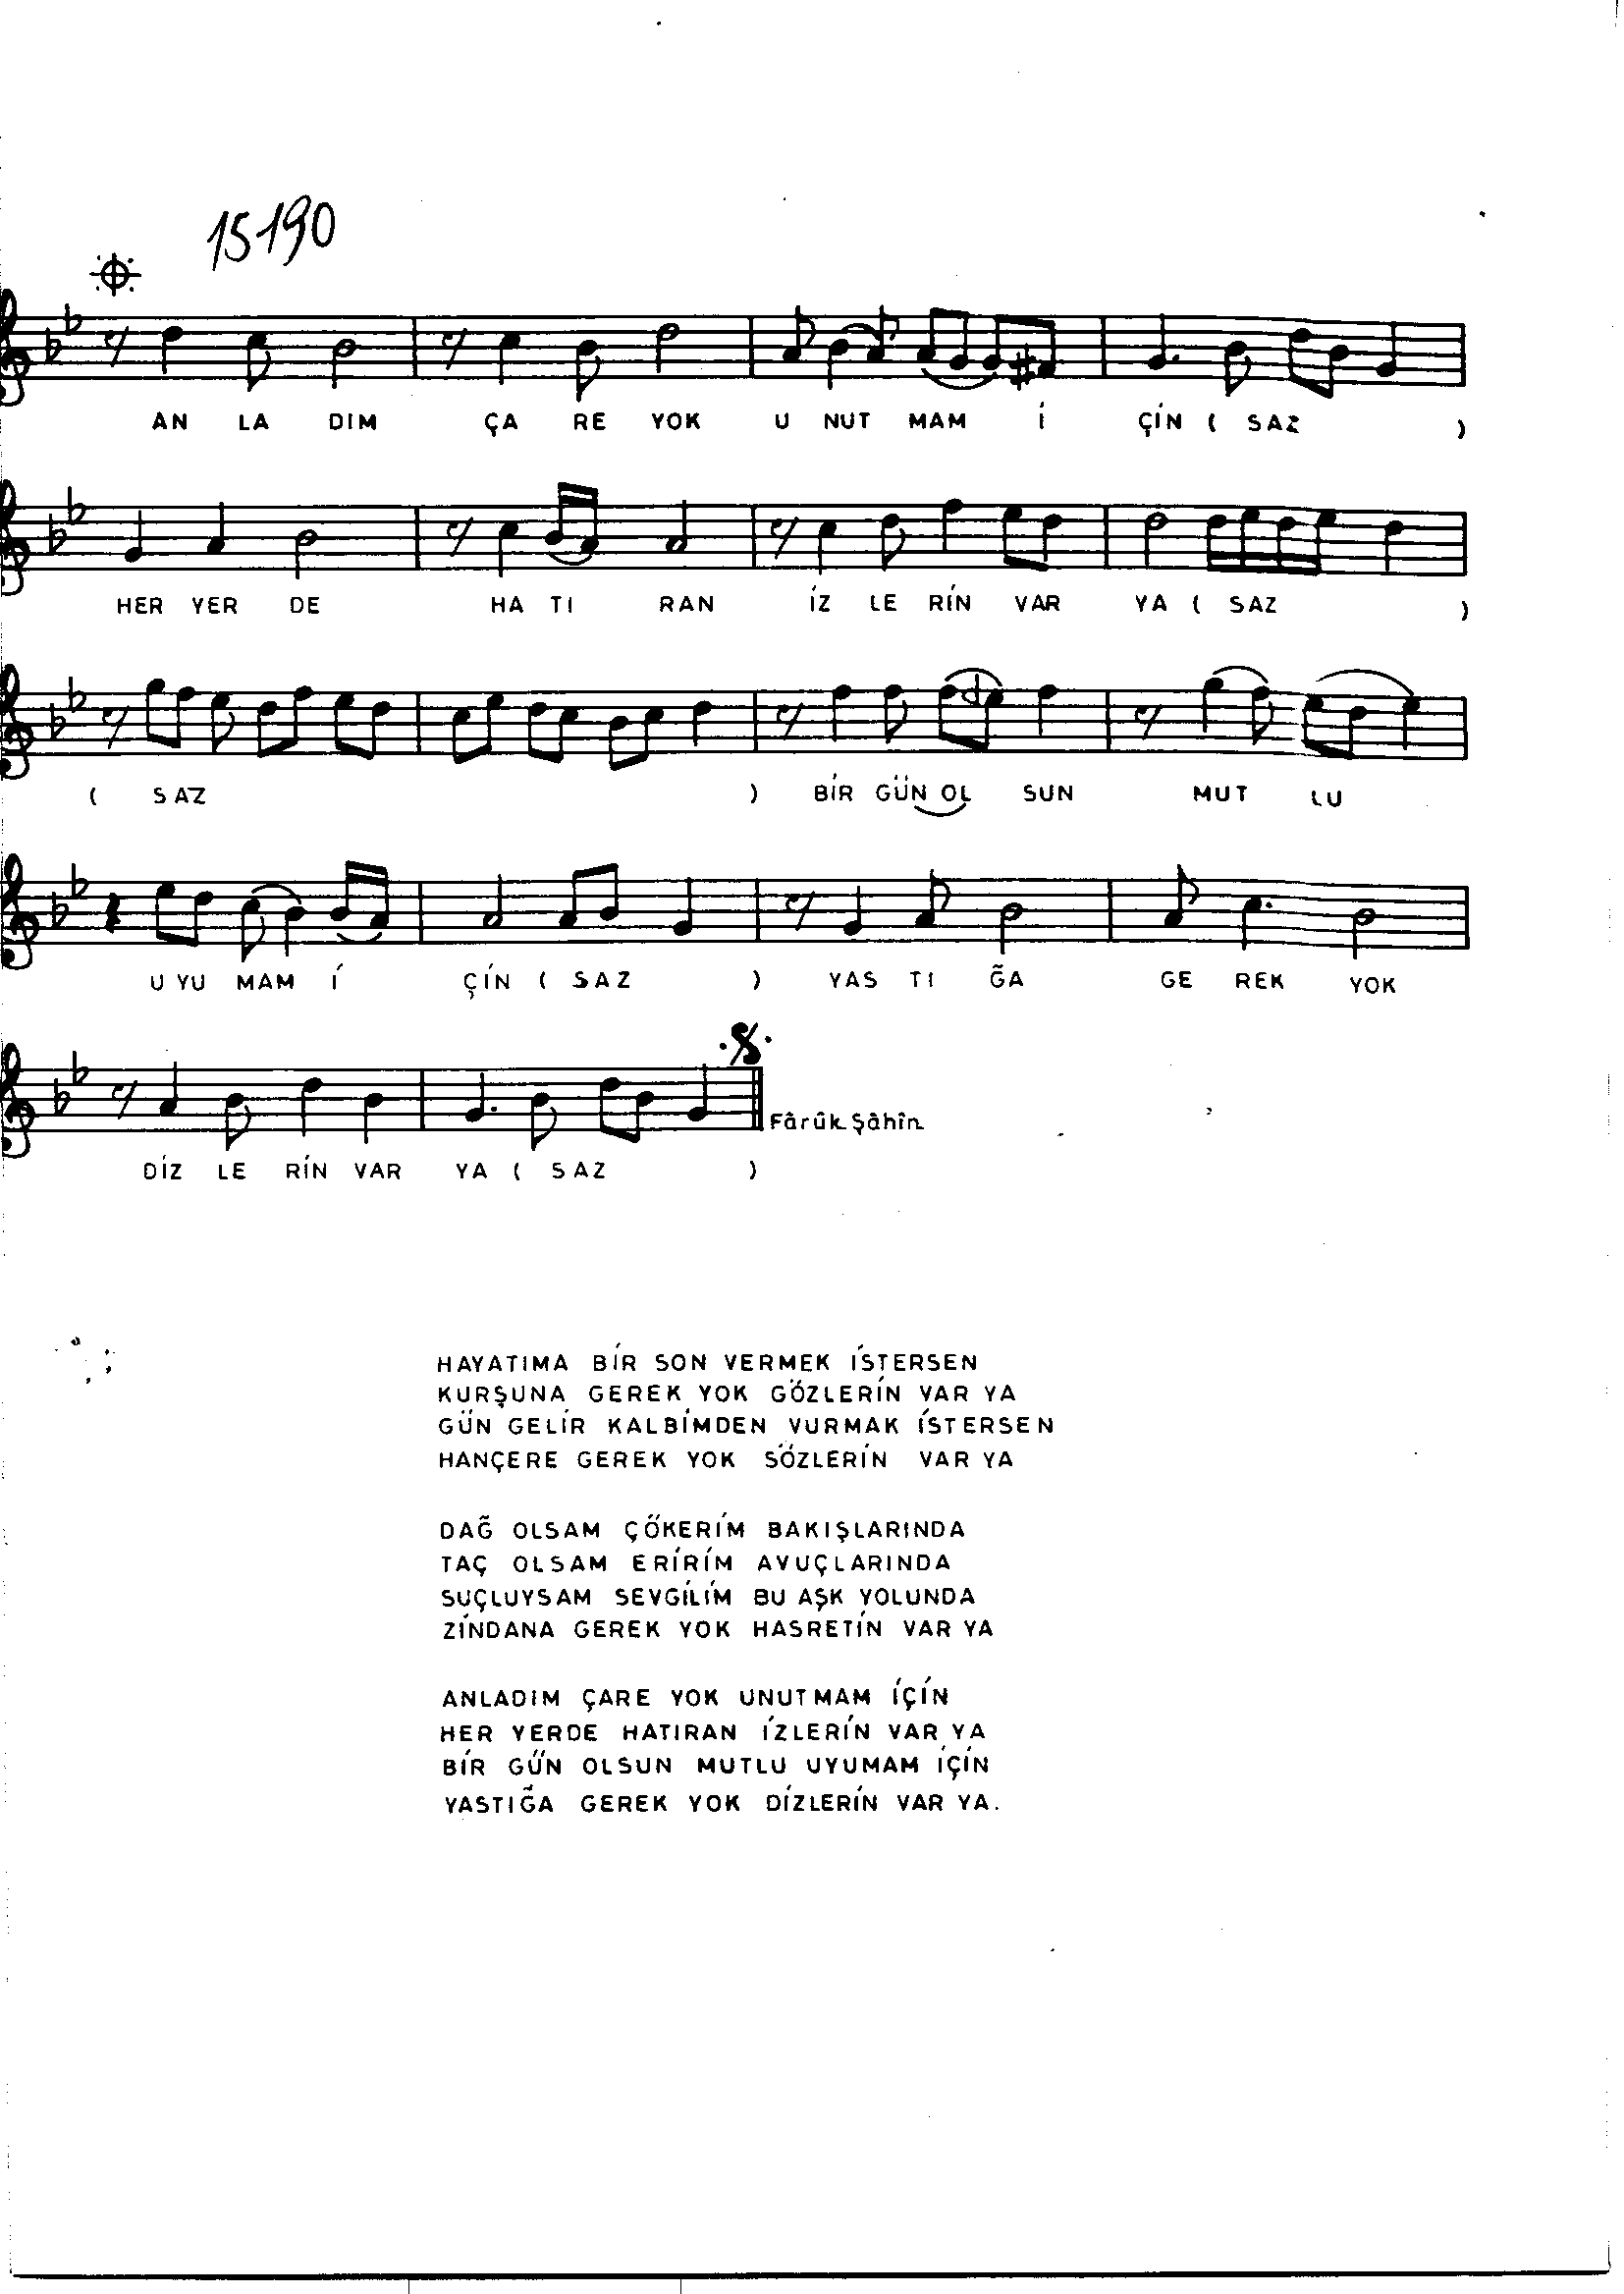 Nihâvend - Şarkı - Ziyâ Taşkent - Sayfa 2